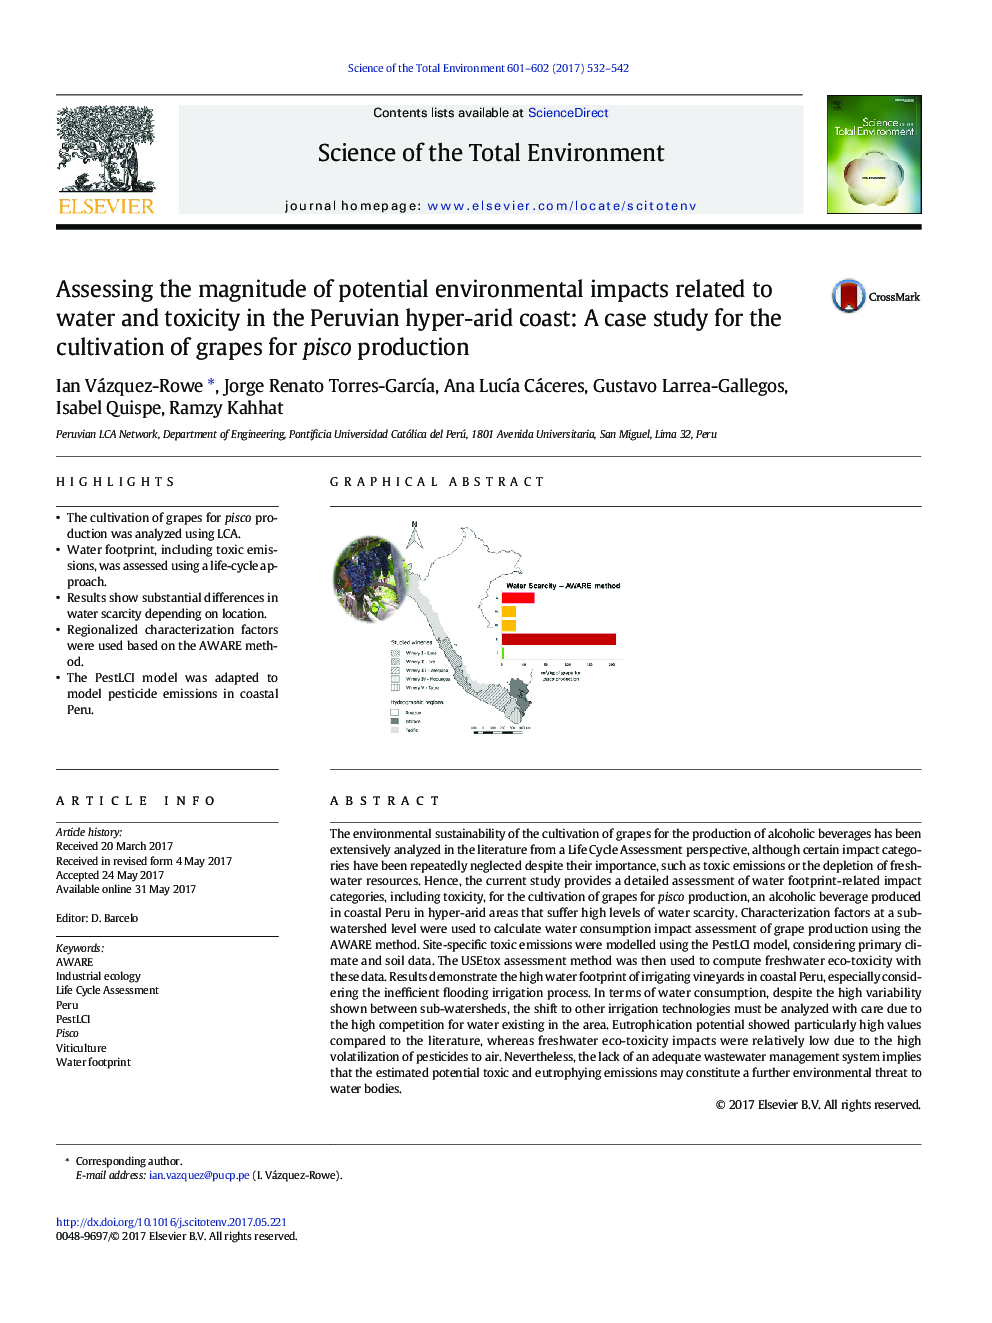 ارزیابی میزان تاثیرات محیطی بالقوه مربوط به آب و سمیت در ساحل پرآبی پرو: مطالعه موردی برای کشت انگور برای تولید پیزکو 